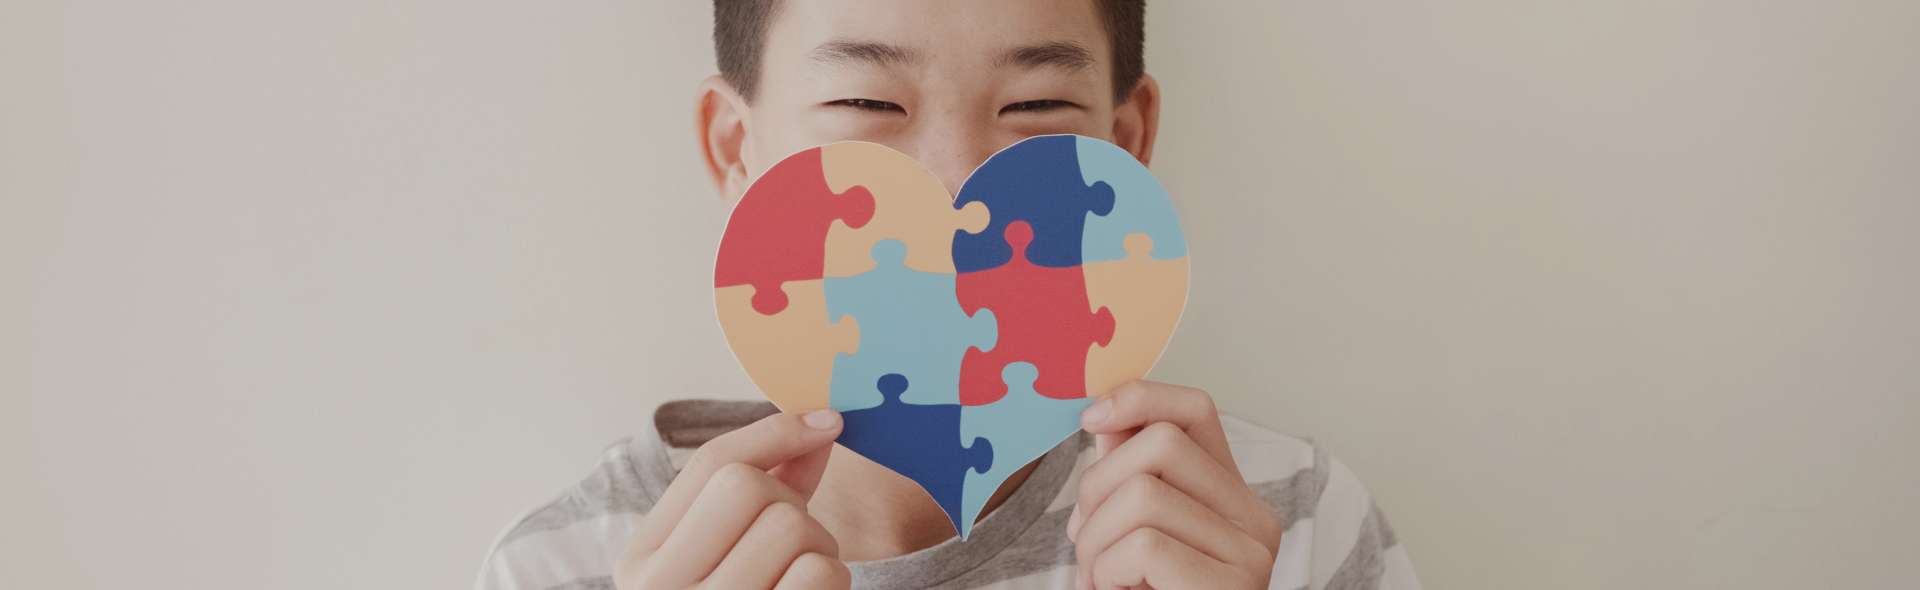 Abril Azul: Mês de Conscientização do Autismo!